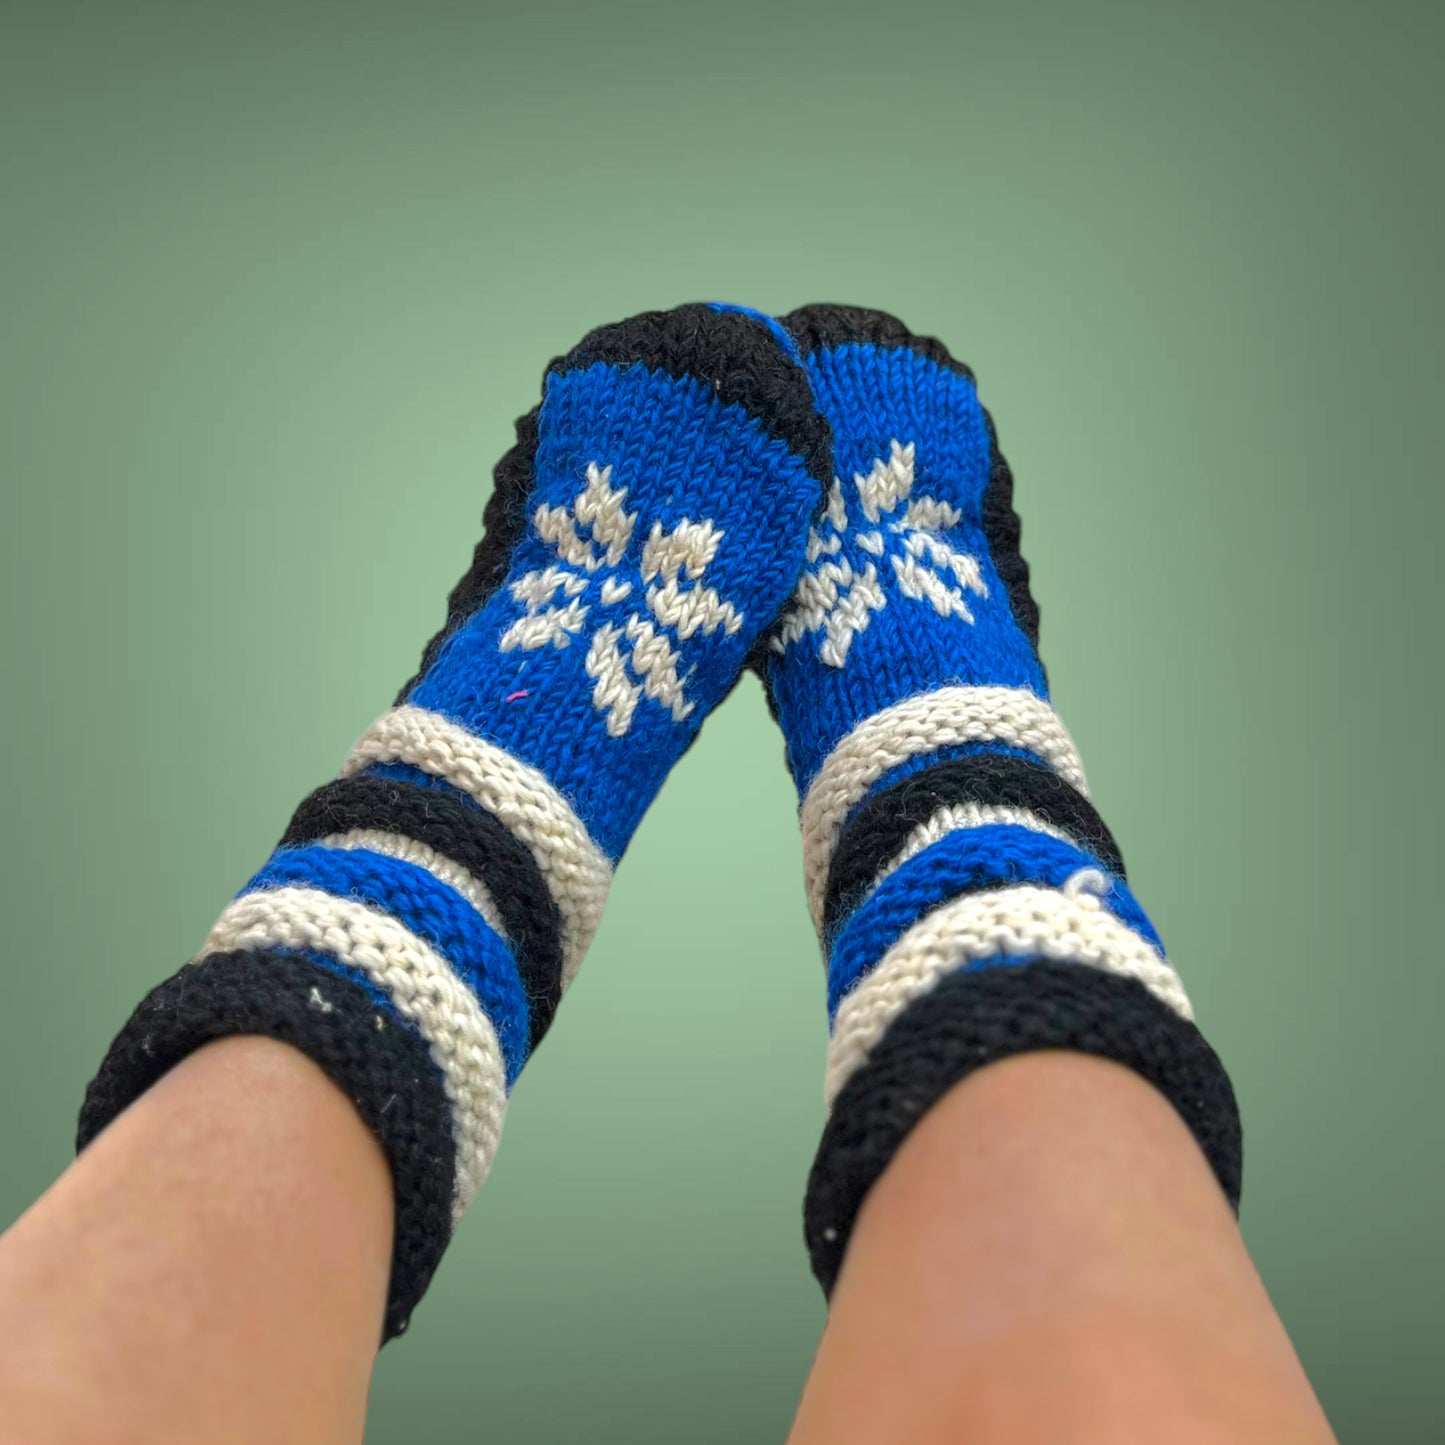 Hippie winter Socks